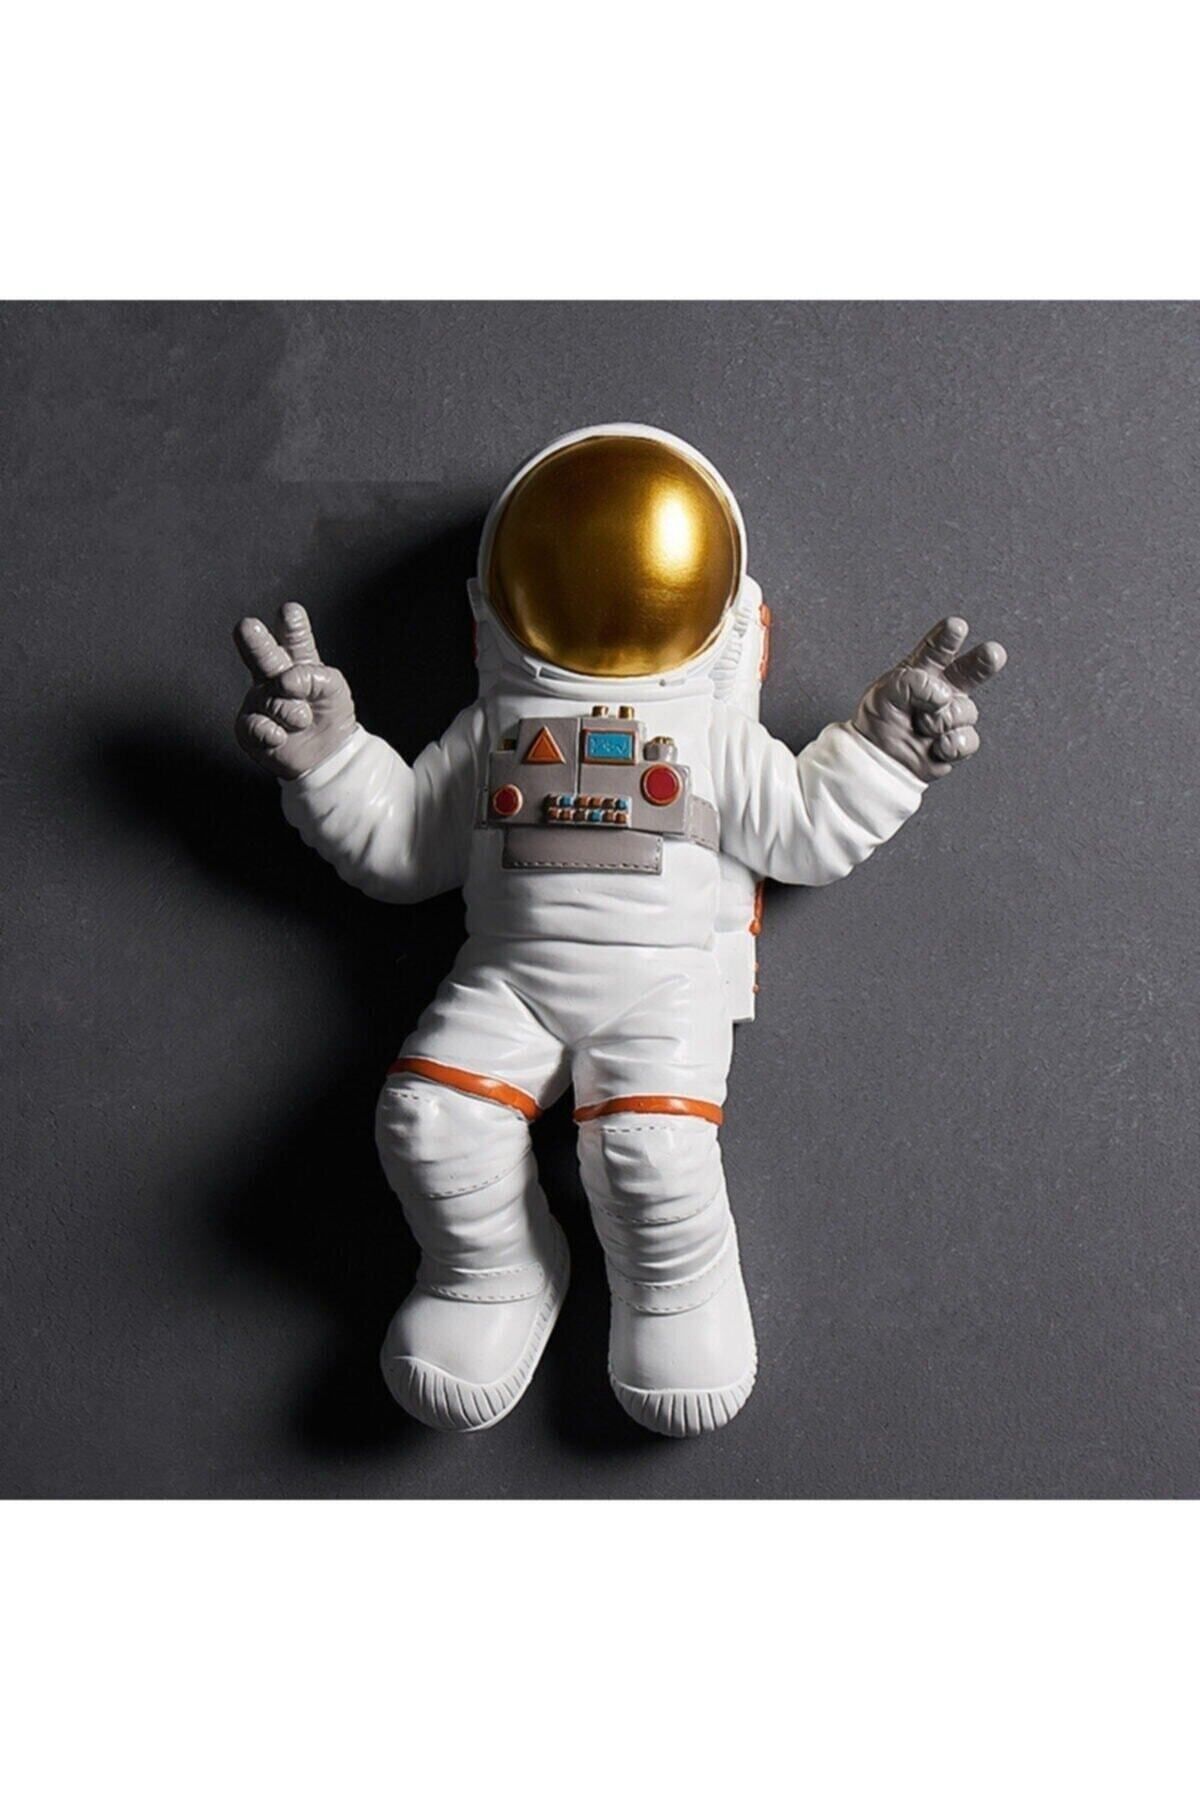 Tual Hobi Sanat Dekoromi Dekoratif Astronot Apollo Duvar Heykeli (47X35CM)